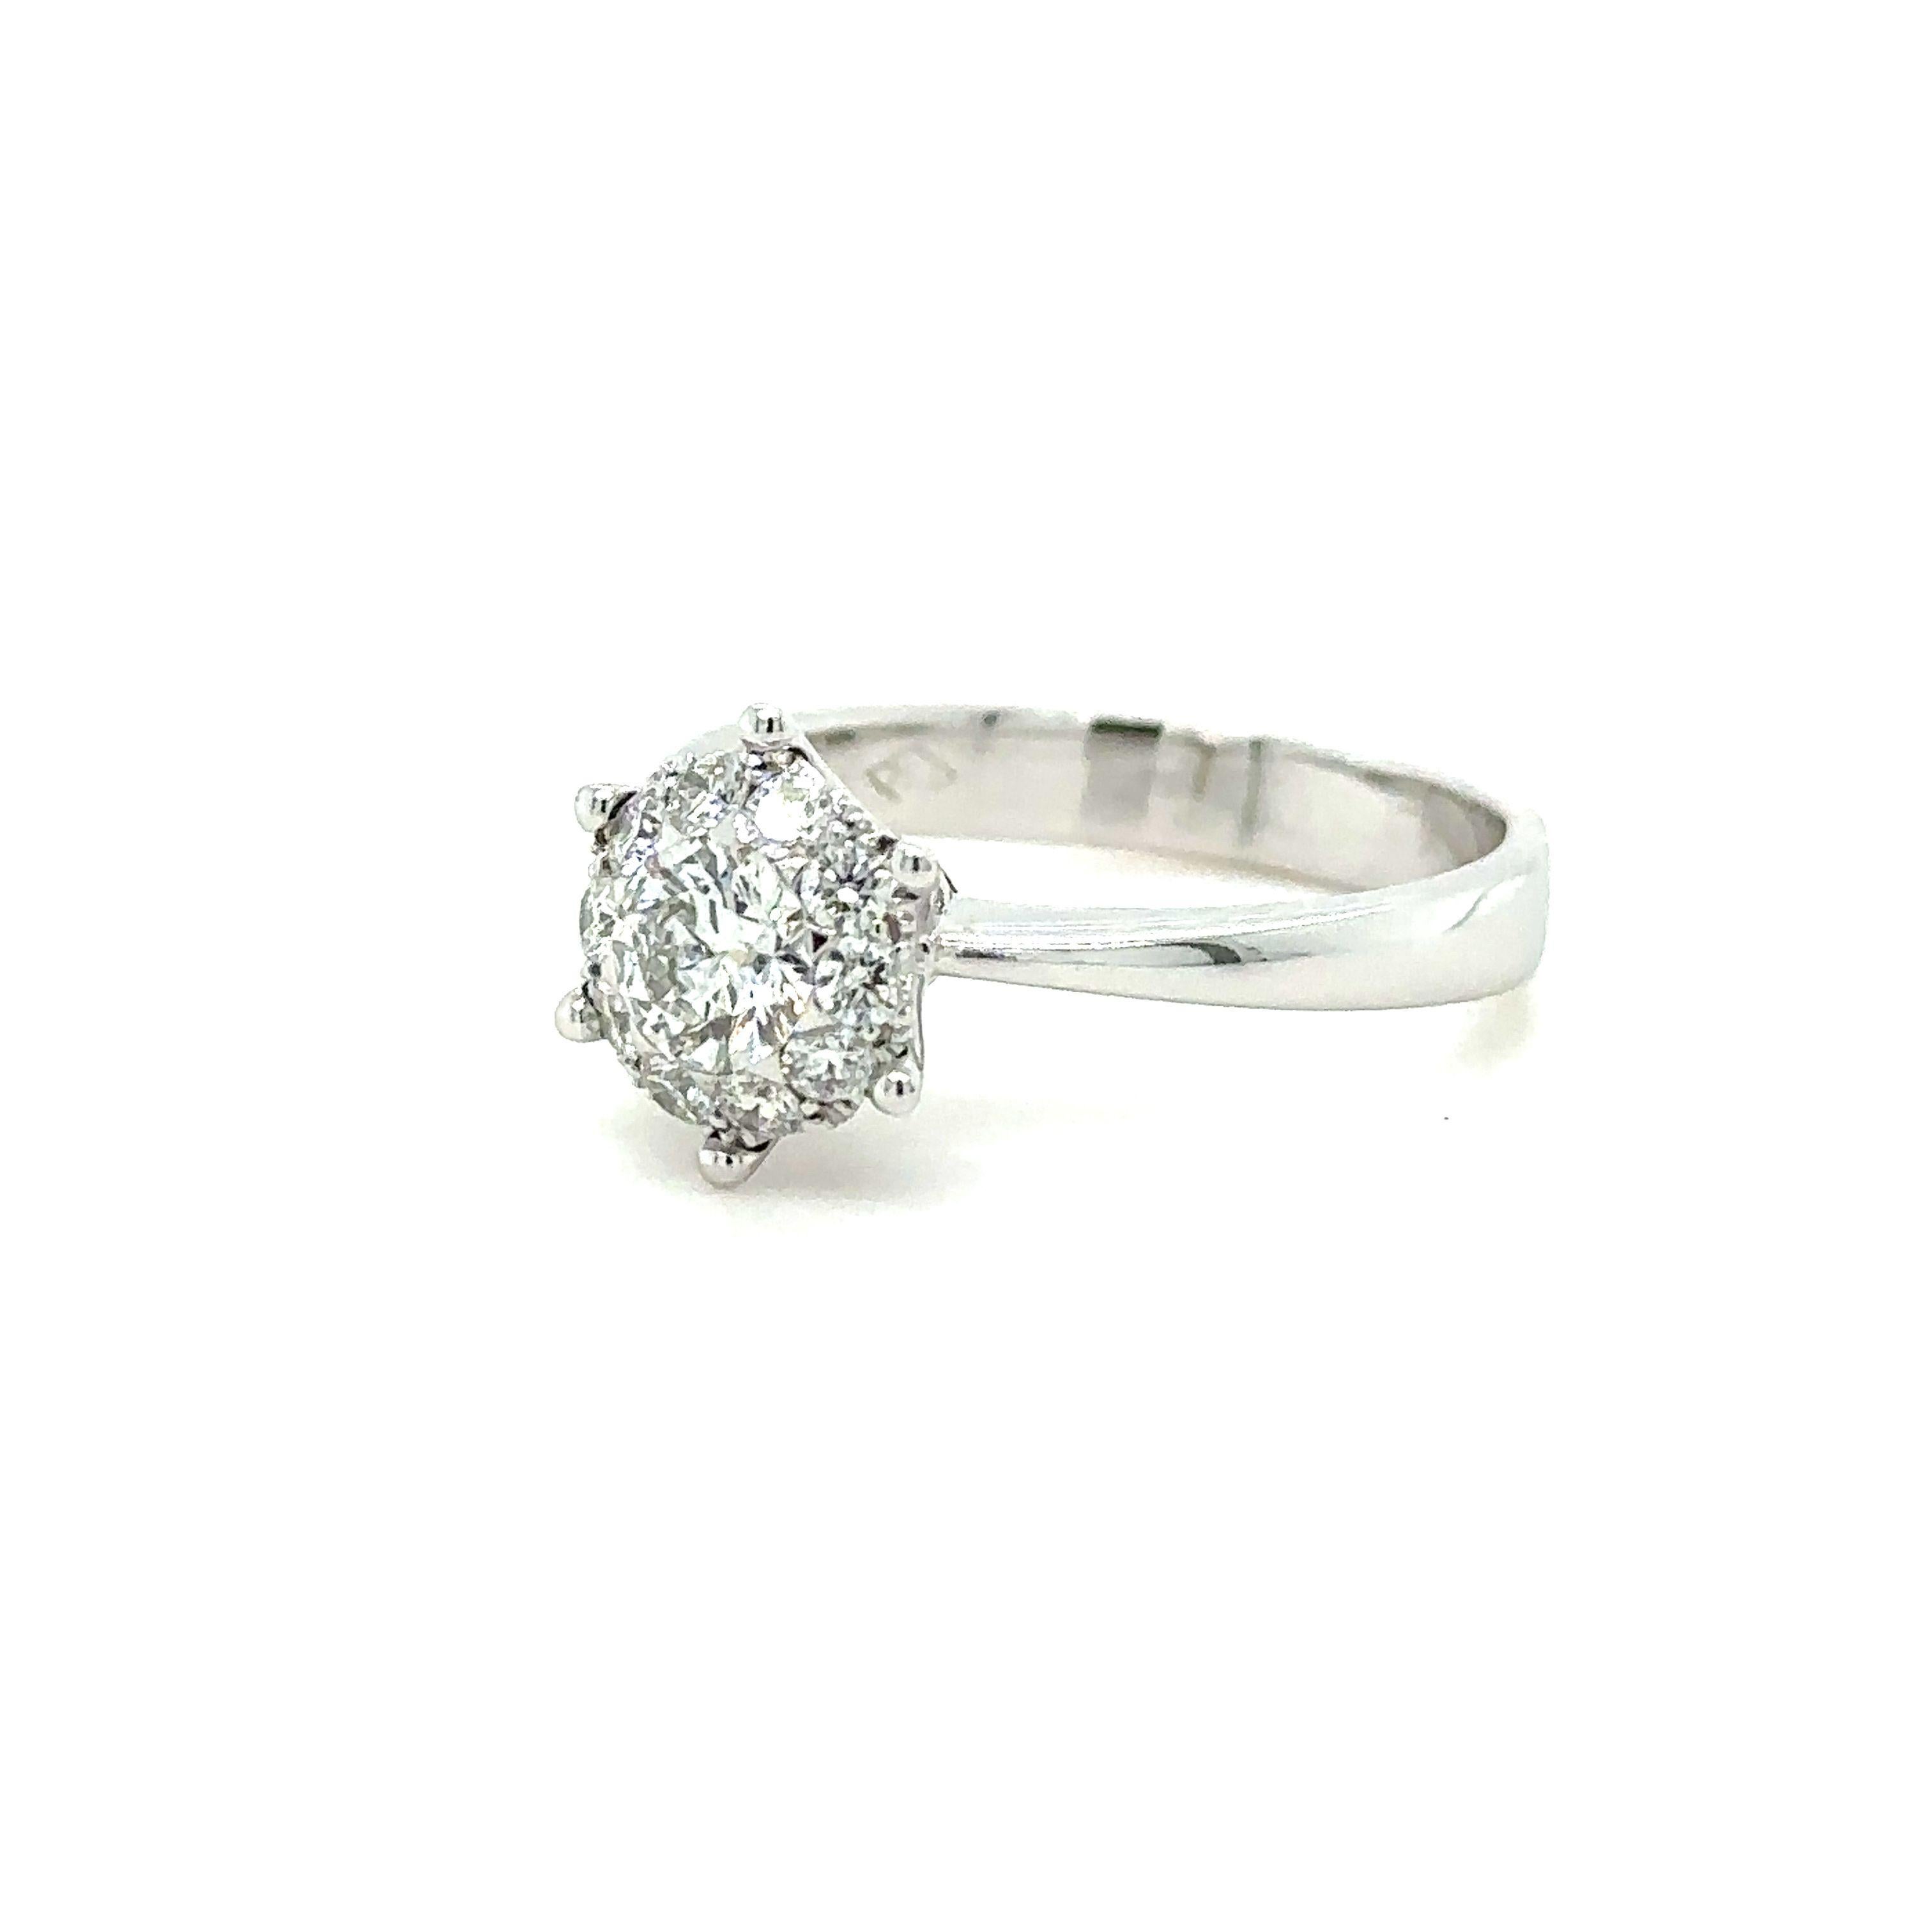 Bespoke Custom Ladies Diamond Ring 0.60ct 4